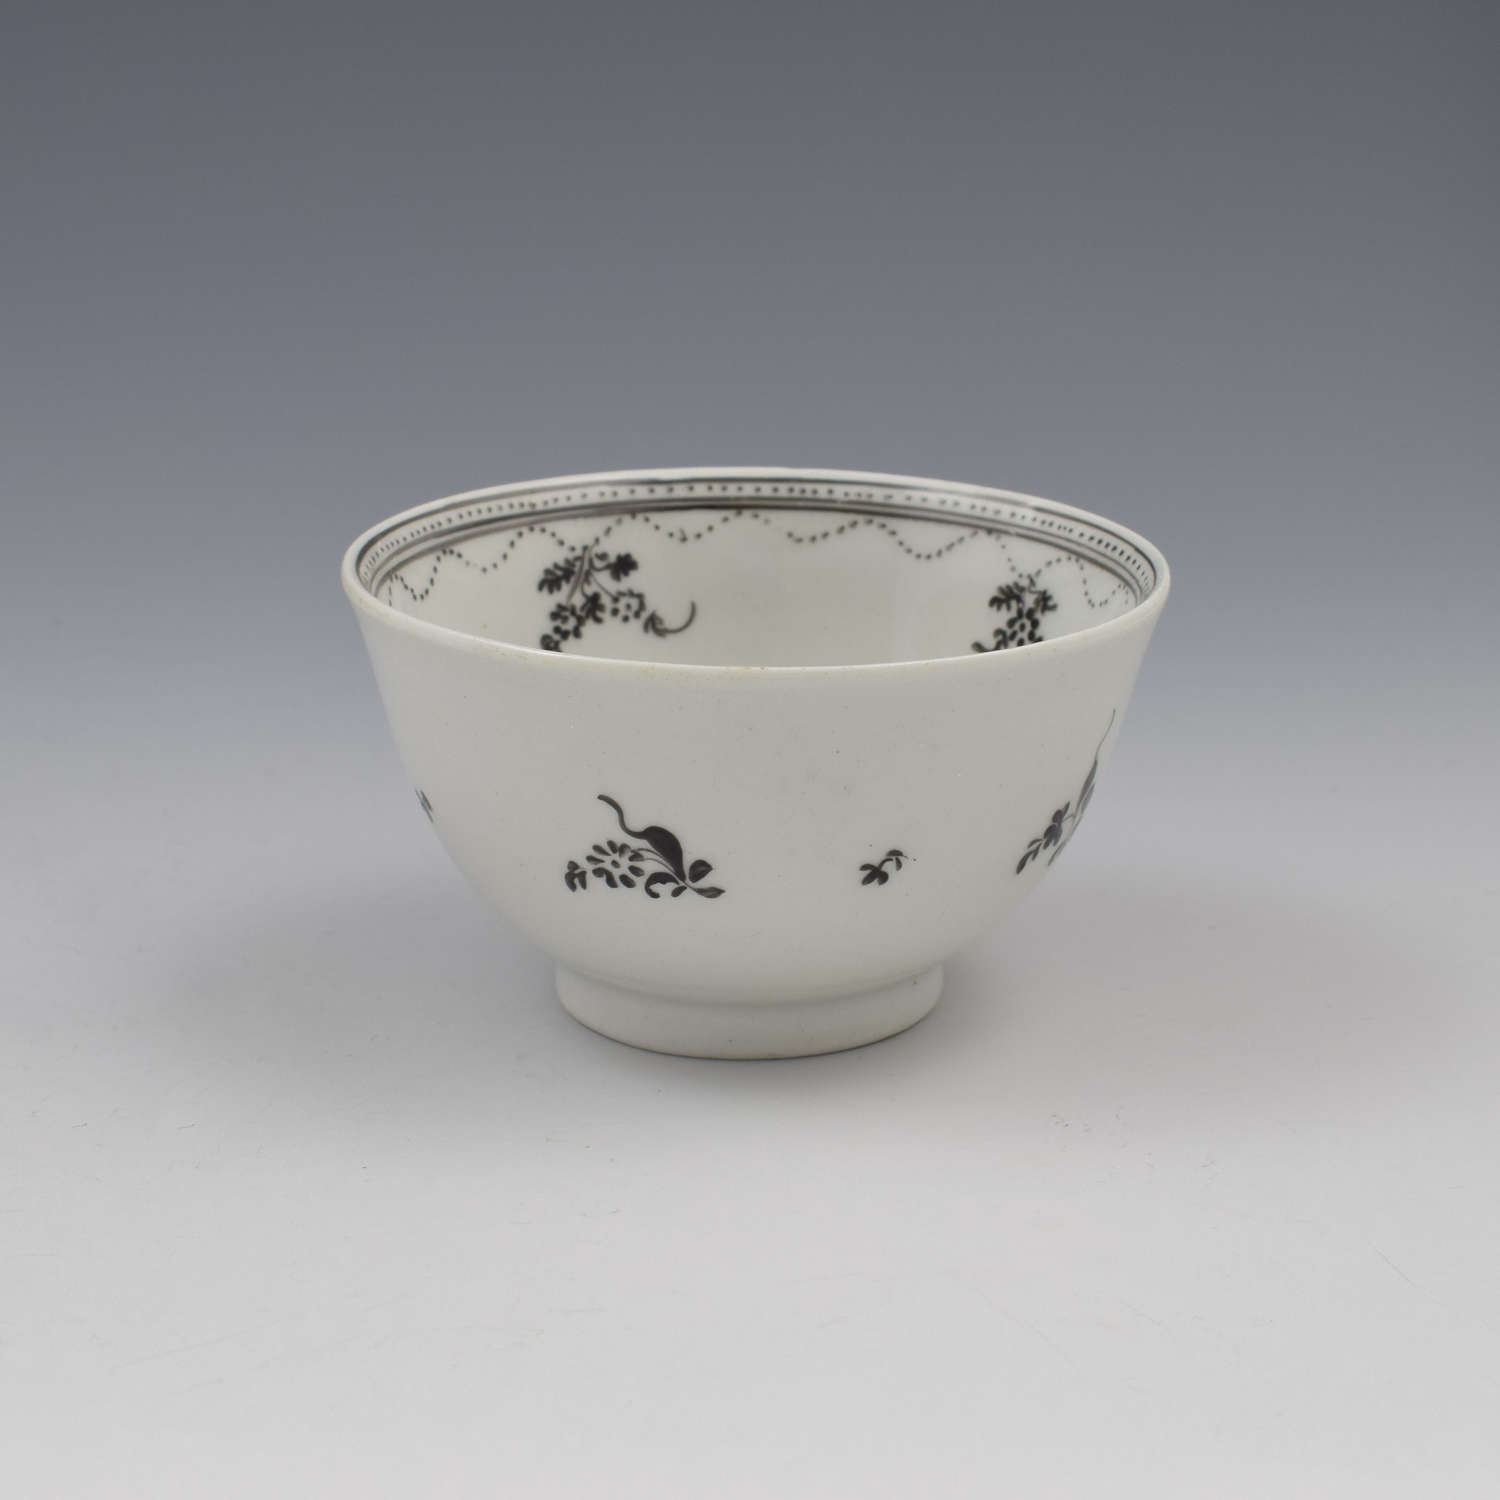 New Hall Porcelain Tea Bowl Pattern 308 Black Enamel Flower Basket